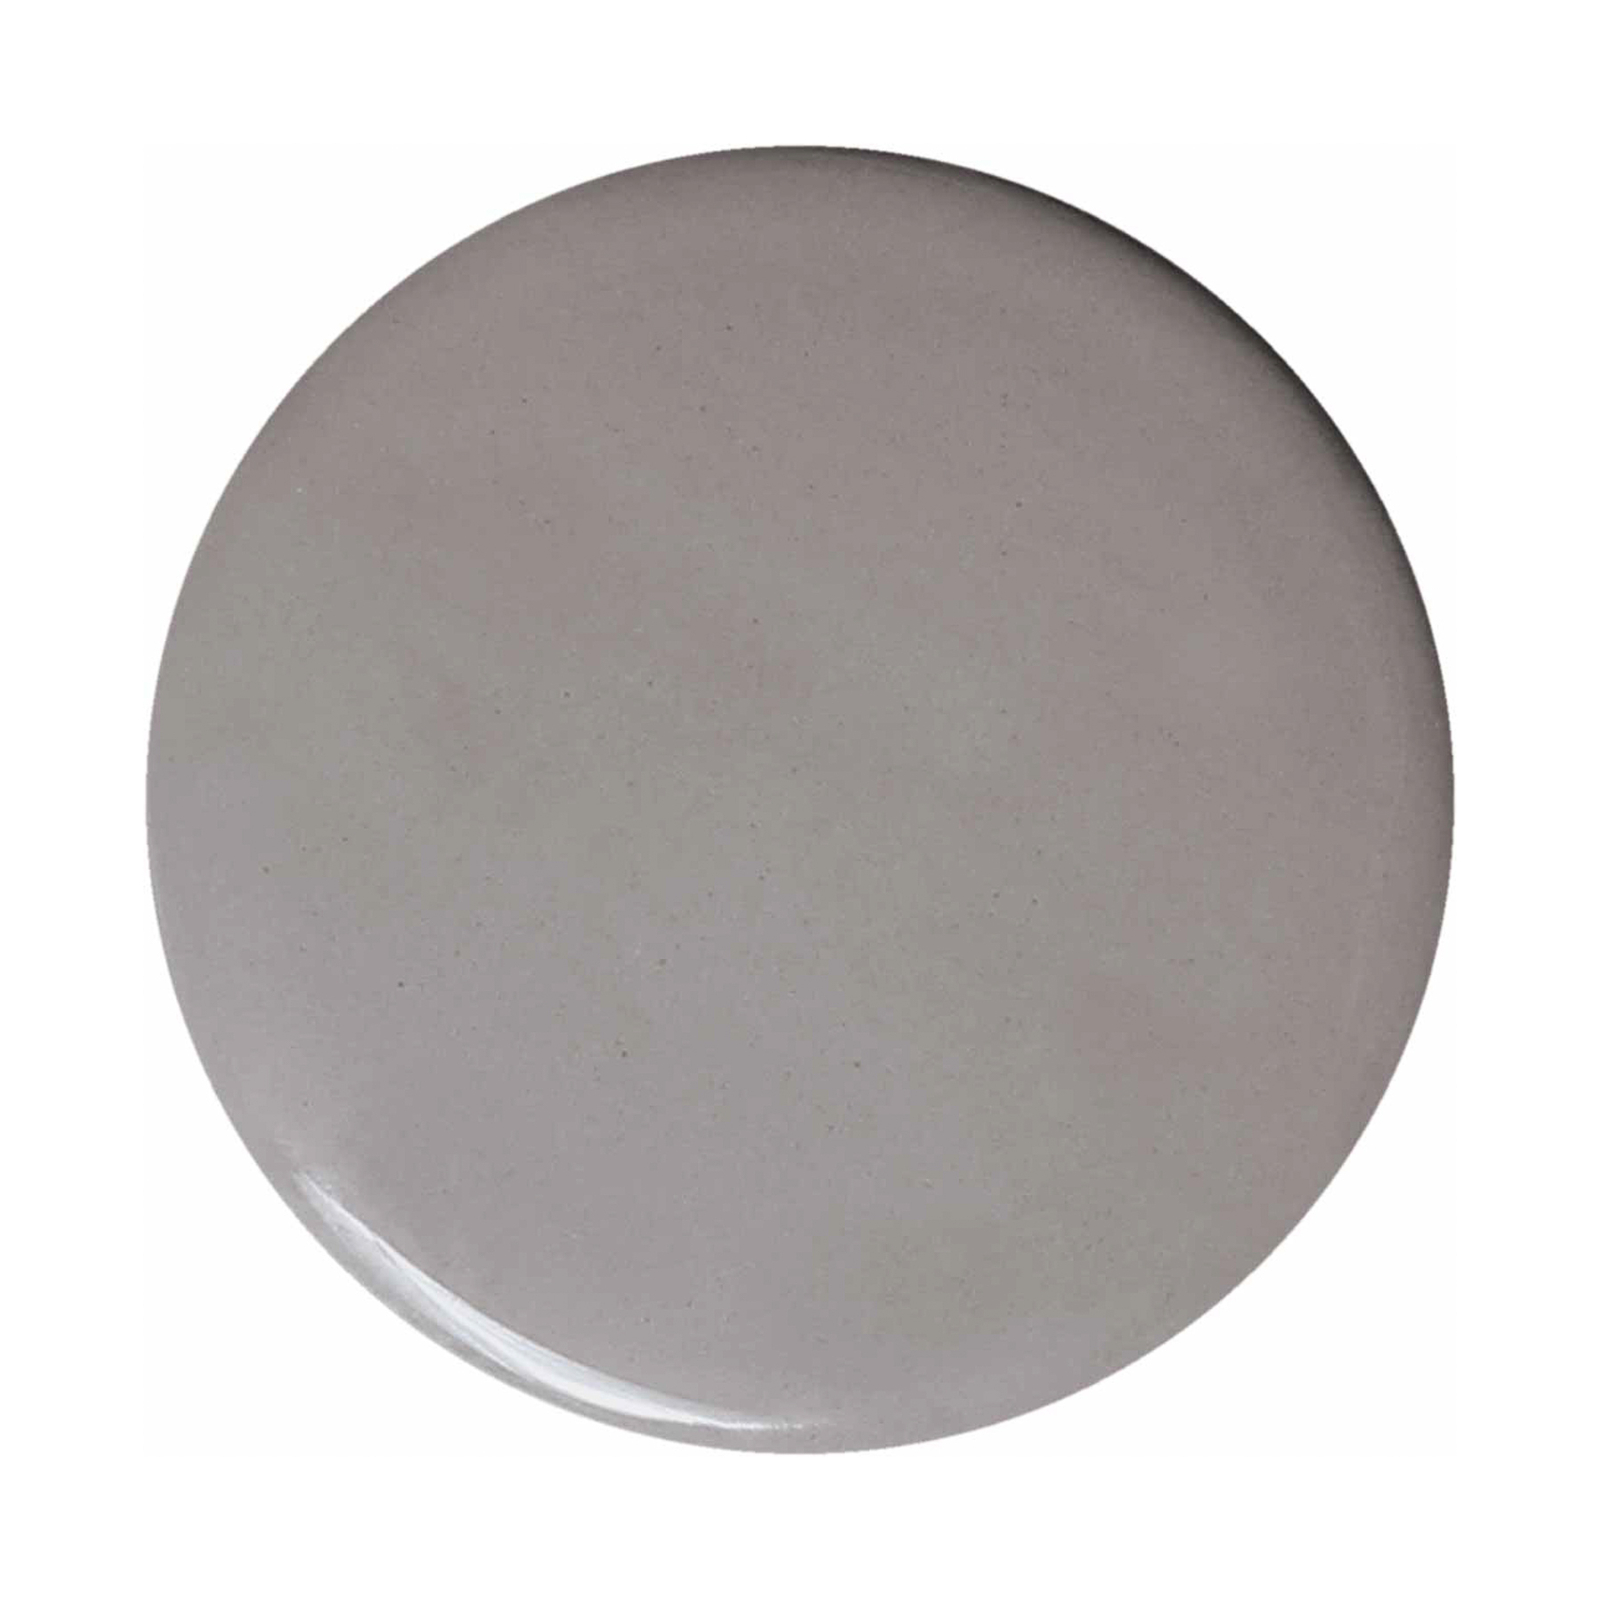 Sospensione Ayrton, ceramica, lunga 29 cm, grigio